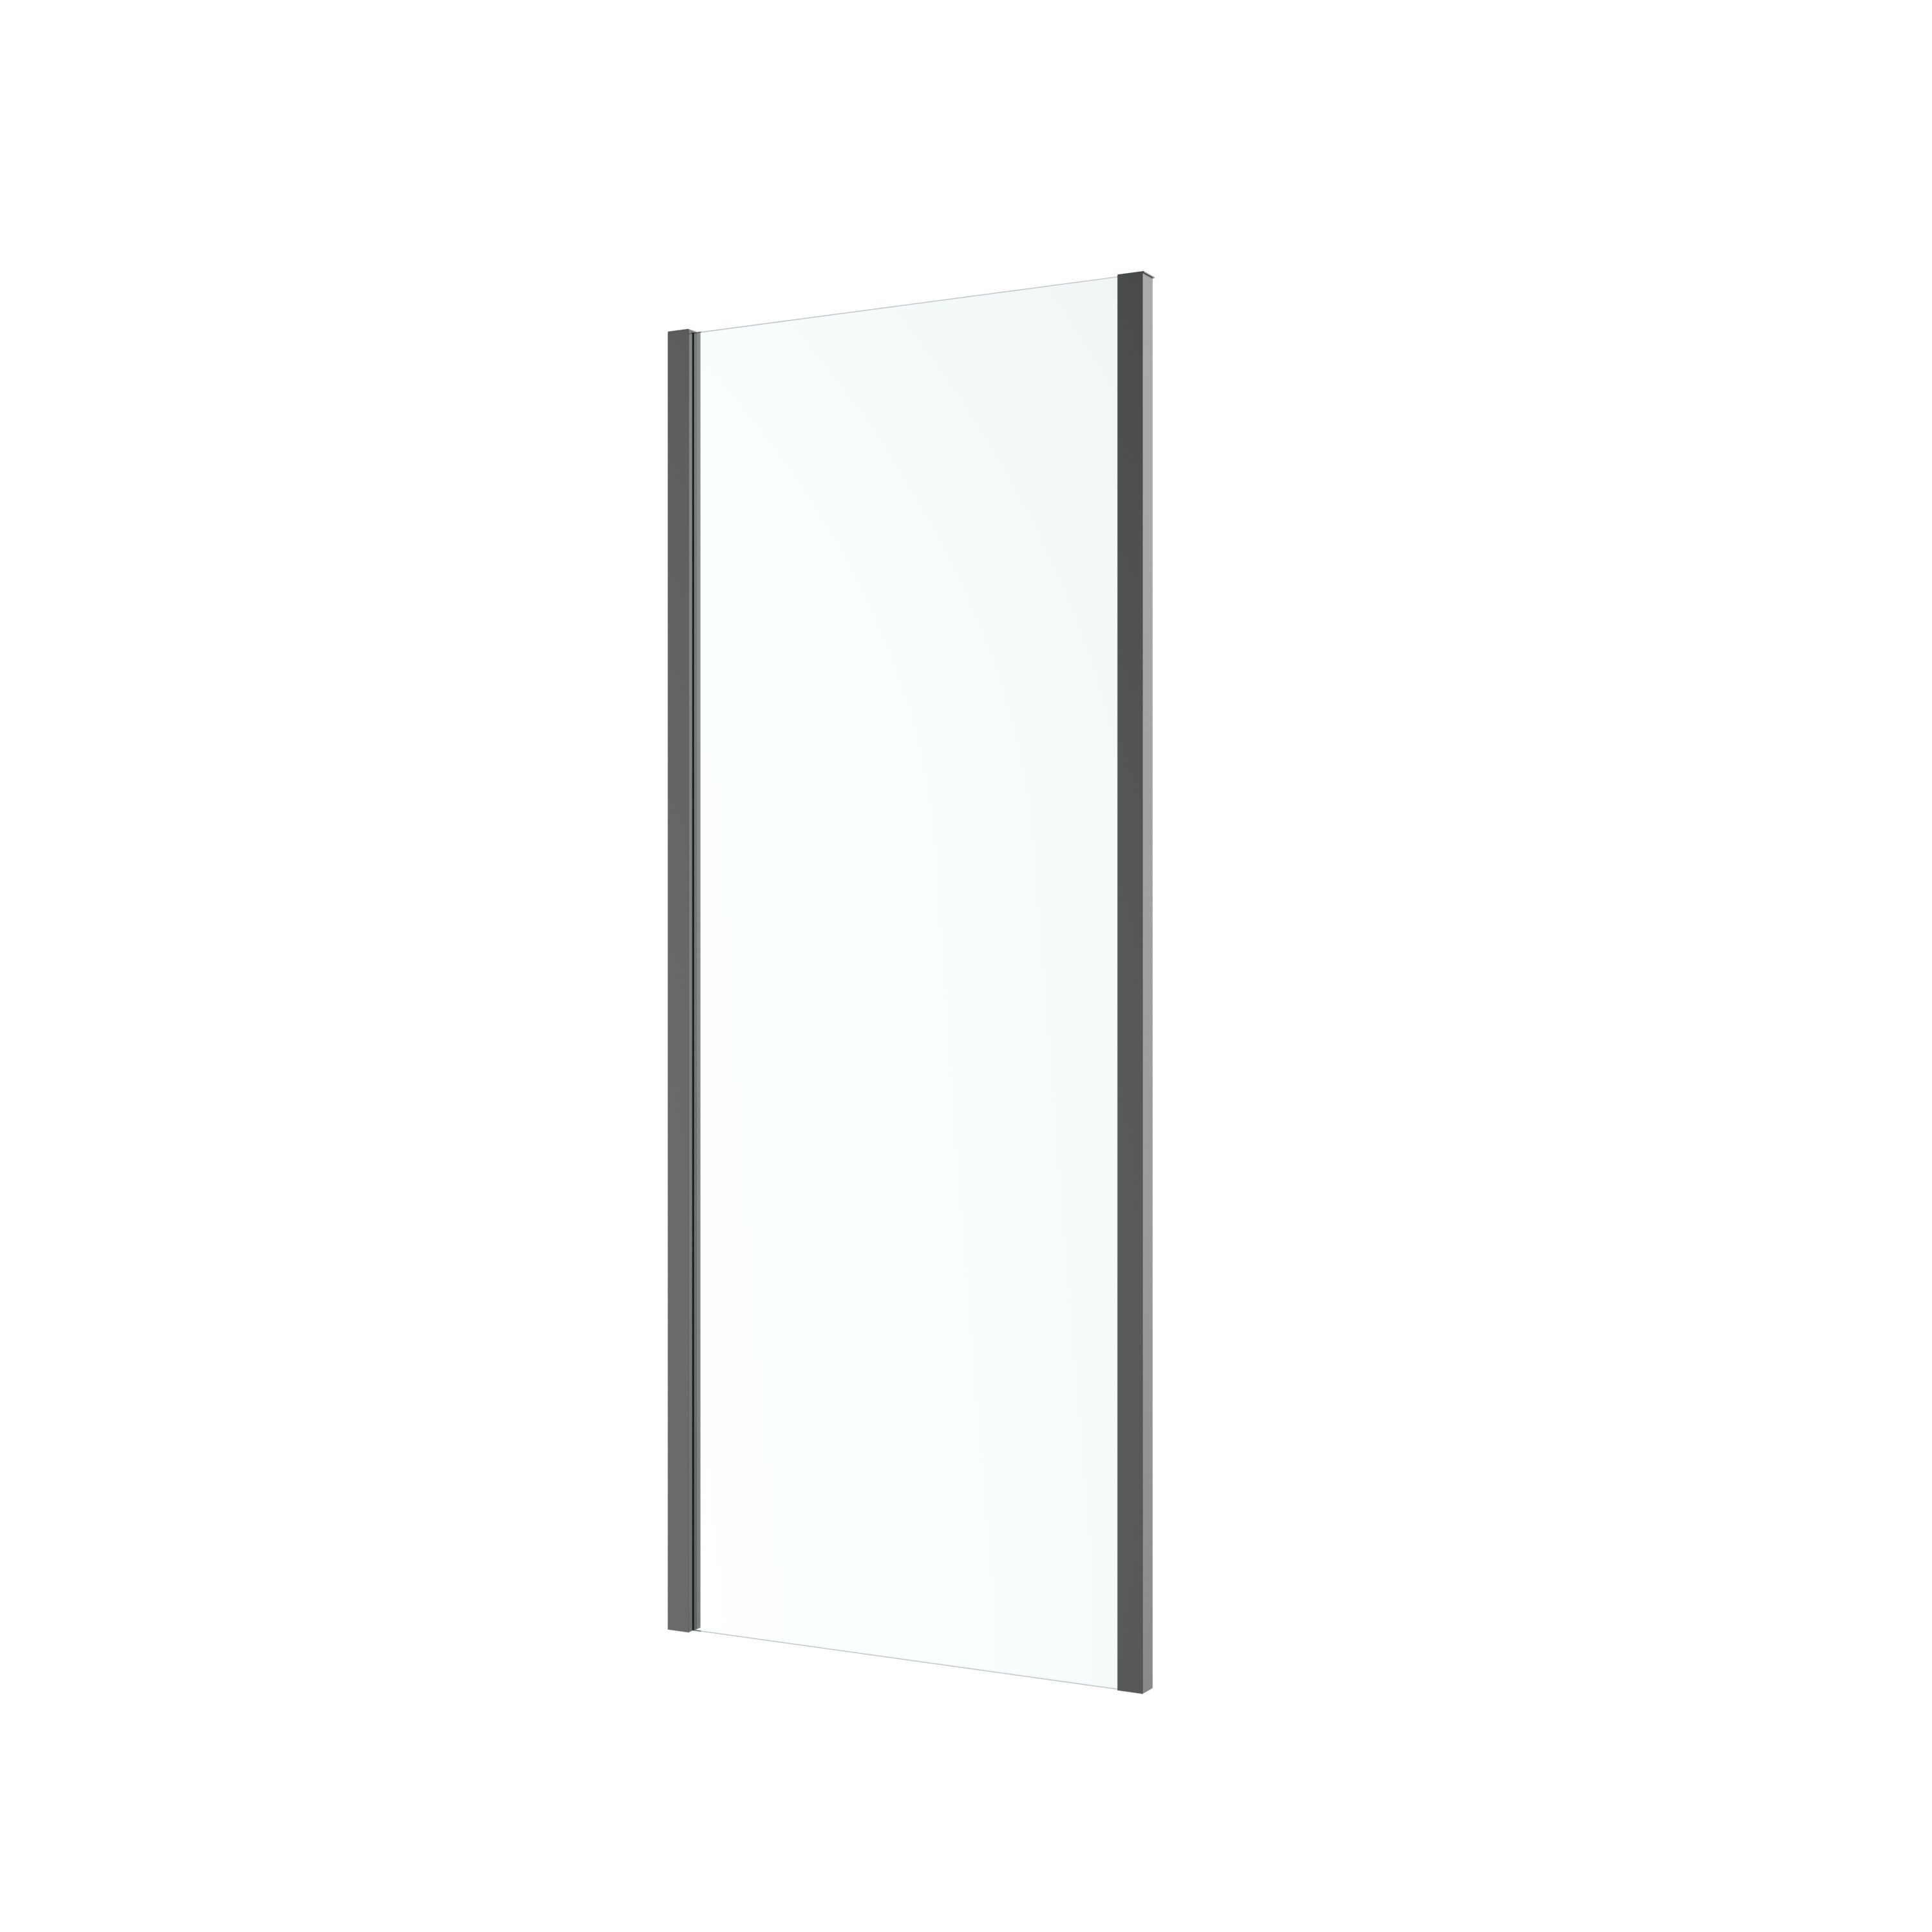 GoodHome Ledava Matt Black Clear glass Fixed Rectangular Side Shower panel (H)195cm (W)80cm